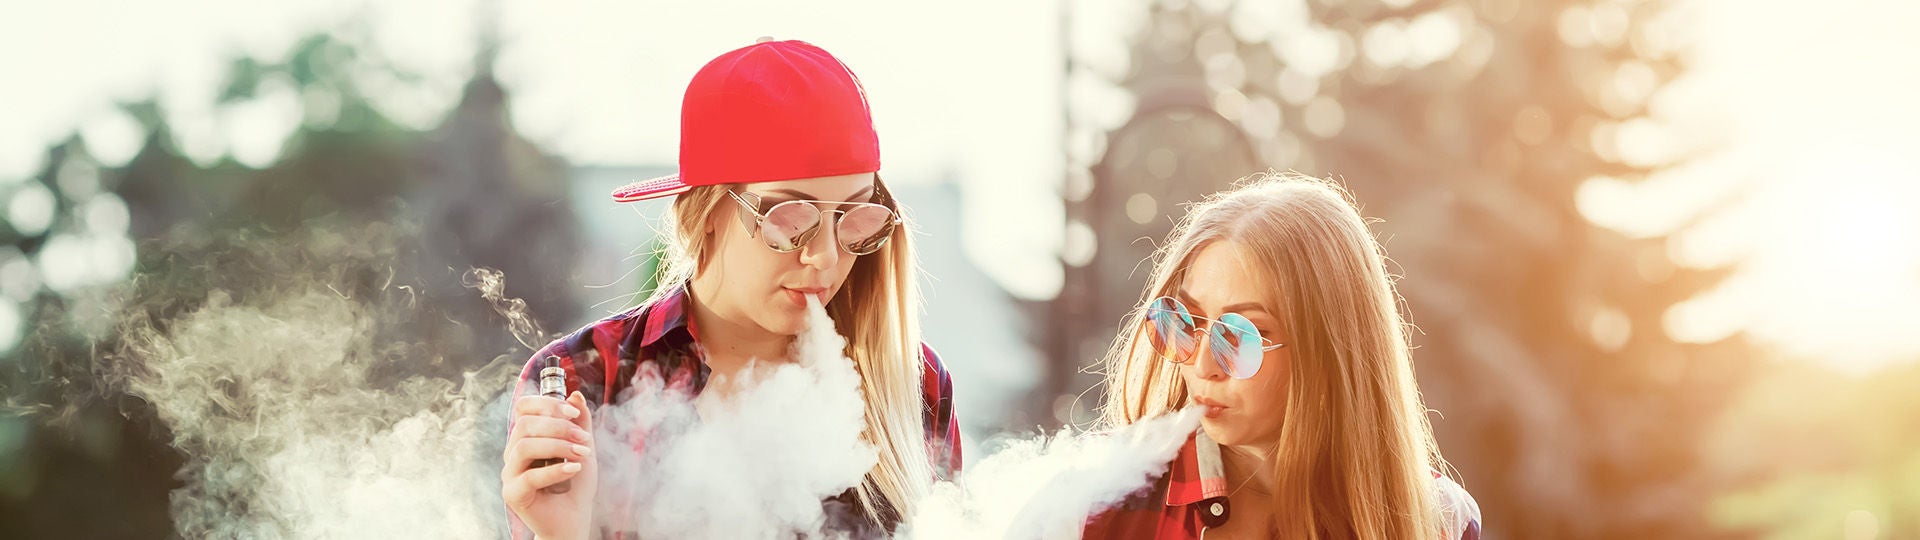 Zwei junge Frauen halten E-Zigaretten in den Händen und inhalieren den Dampf.